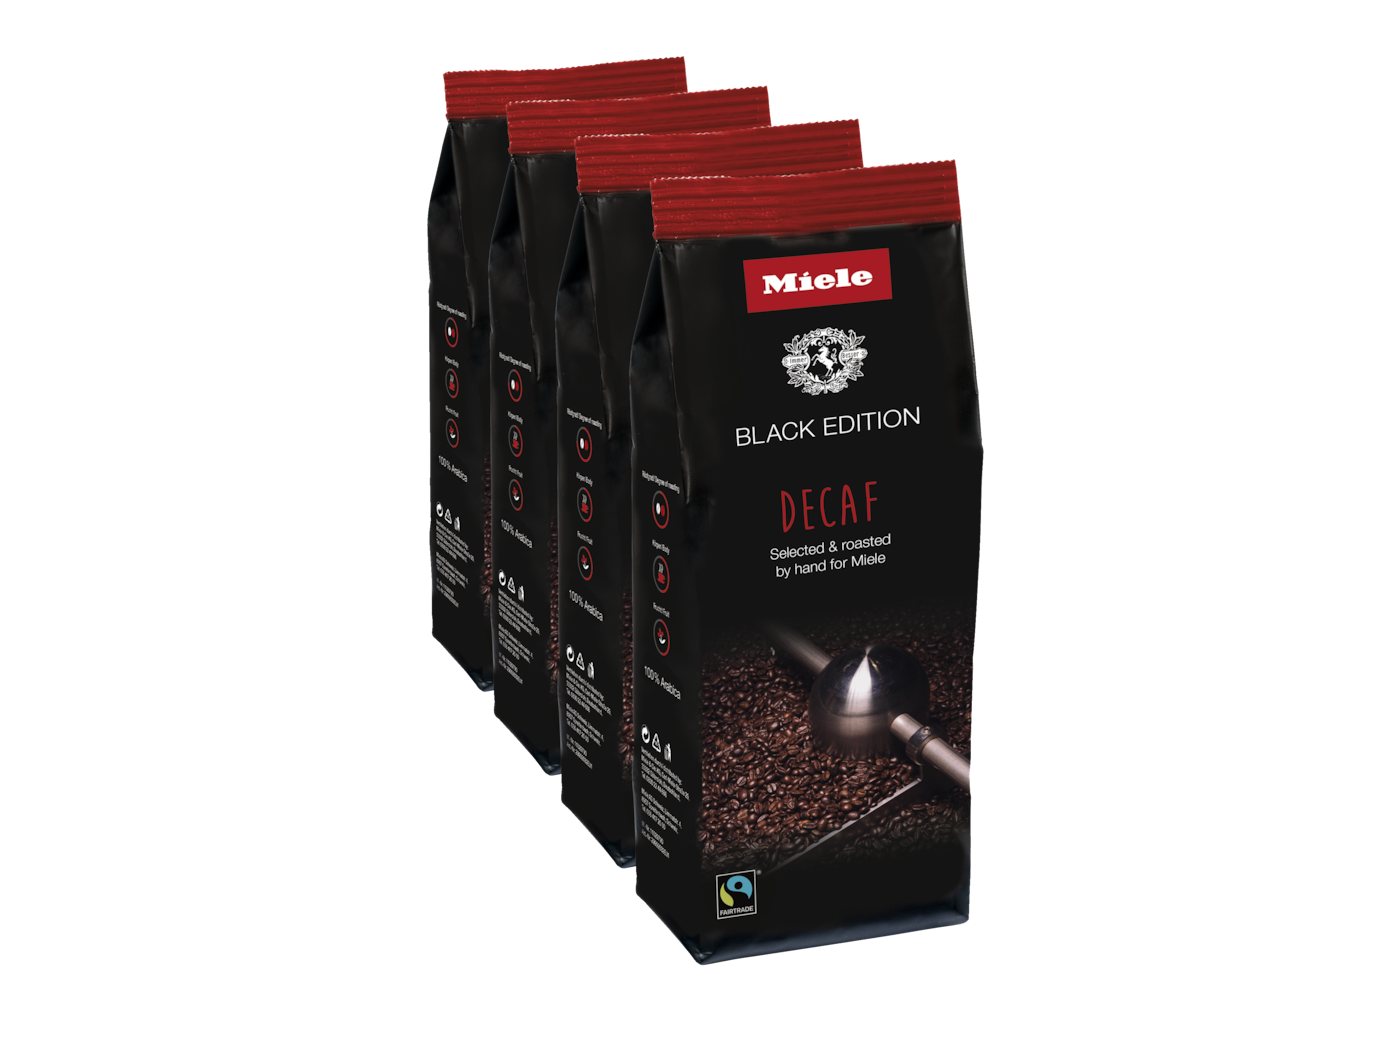 Miele Black Edition Decaf Tökéletes koffeinmentes kávéspecialitások készítéséhez.